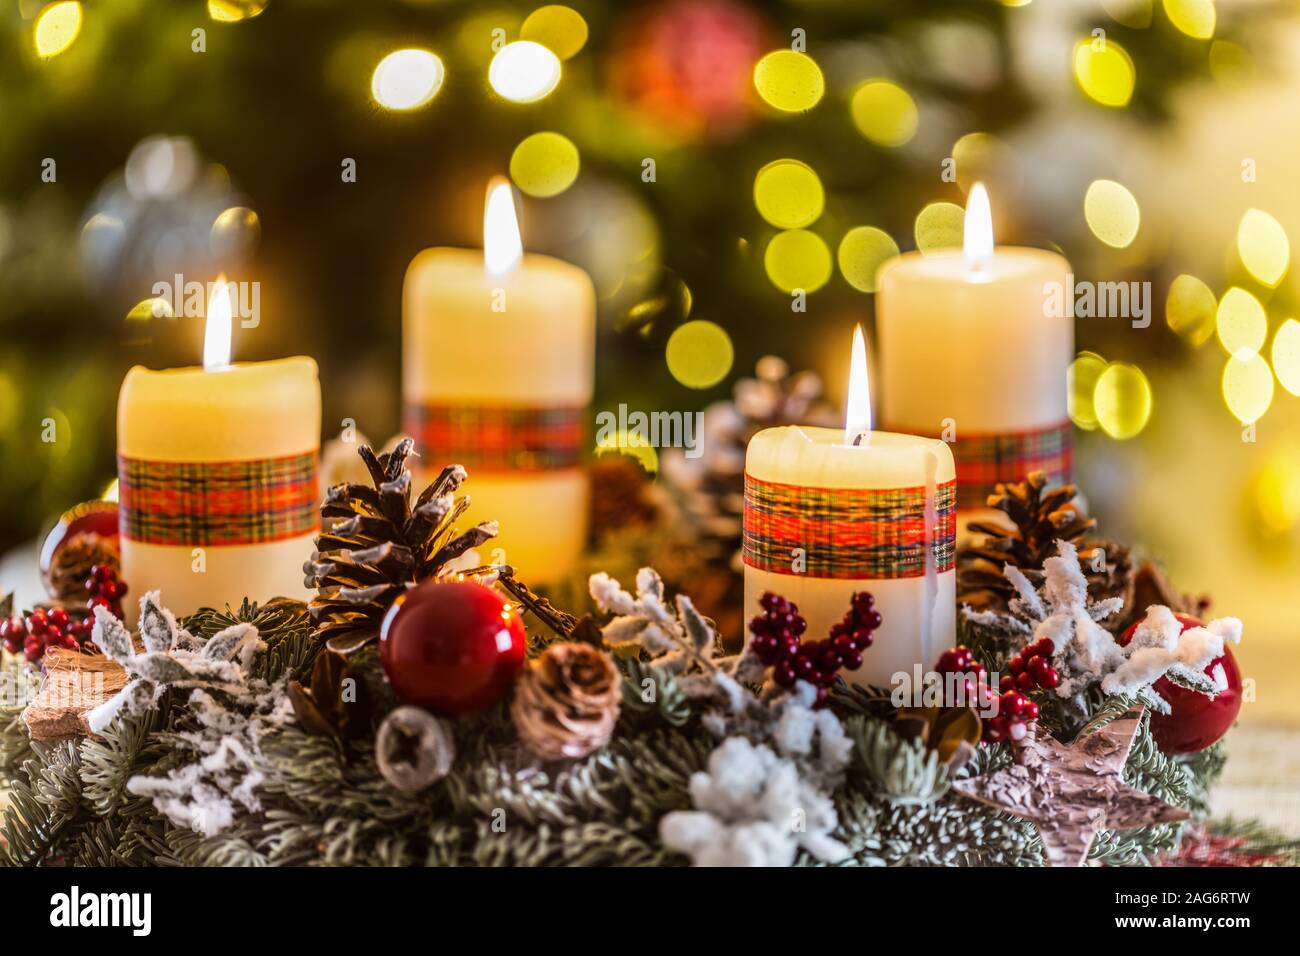 Corona de Adviento con cuatro velas encendidas blanco bolas de Navidad y adornos en un fondo de madera con ambiente festivo Foto de stock